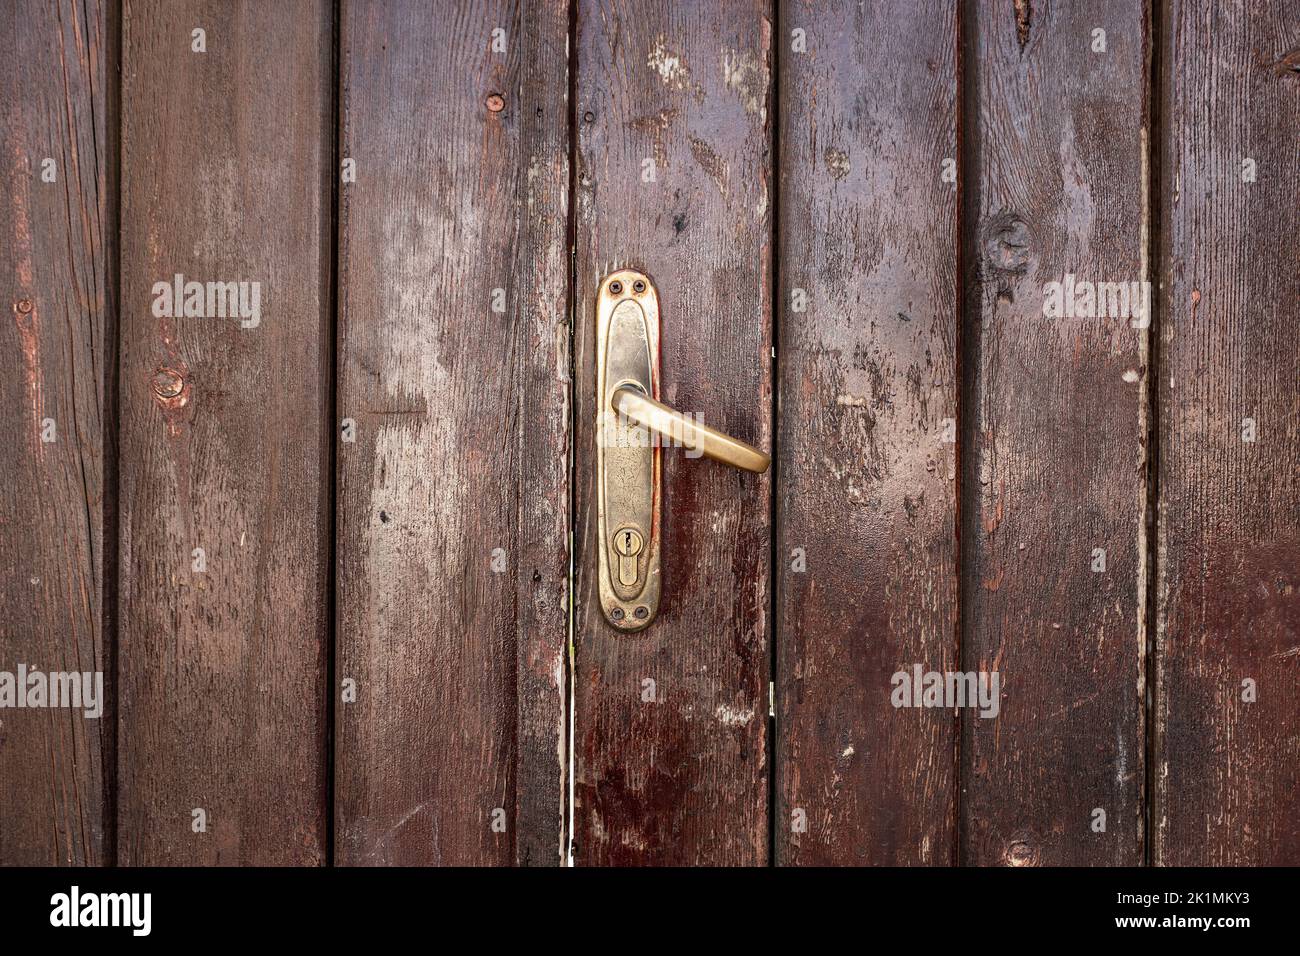 Vecchio, classico sbiadito, marrone, porta in legno con maniglia in ferro. Texture e sfondo delle porte. Foto di alta qualità Foto Stock